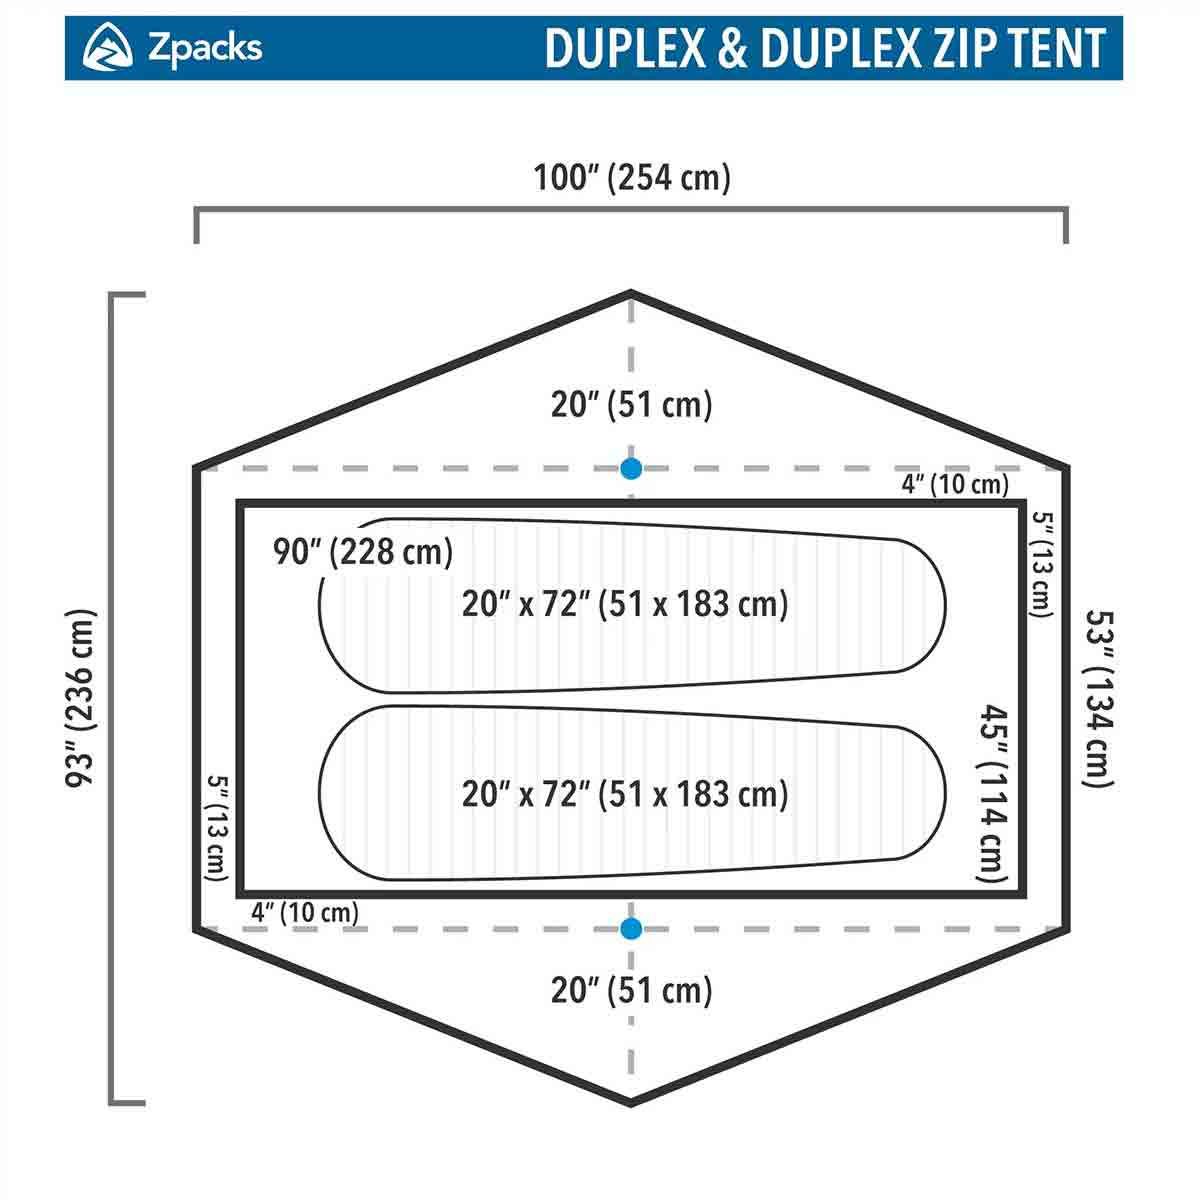 Zpacks Duplex Zip backpacking tent - 2 people